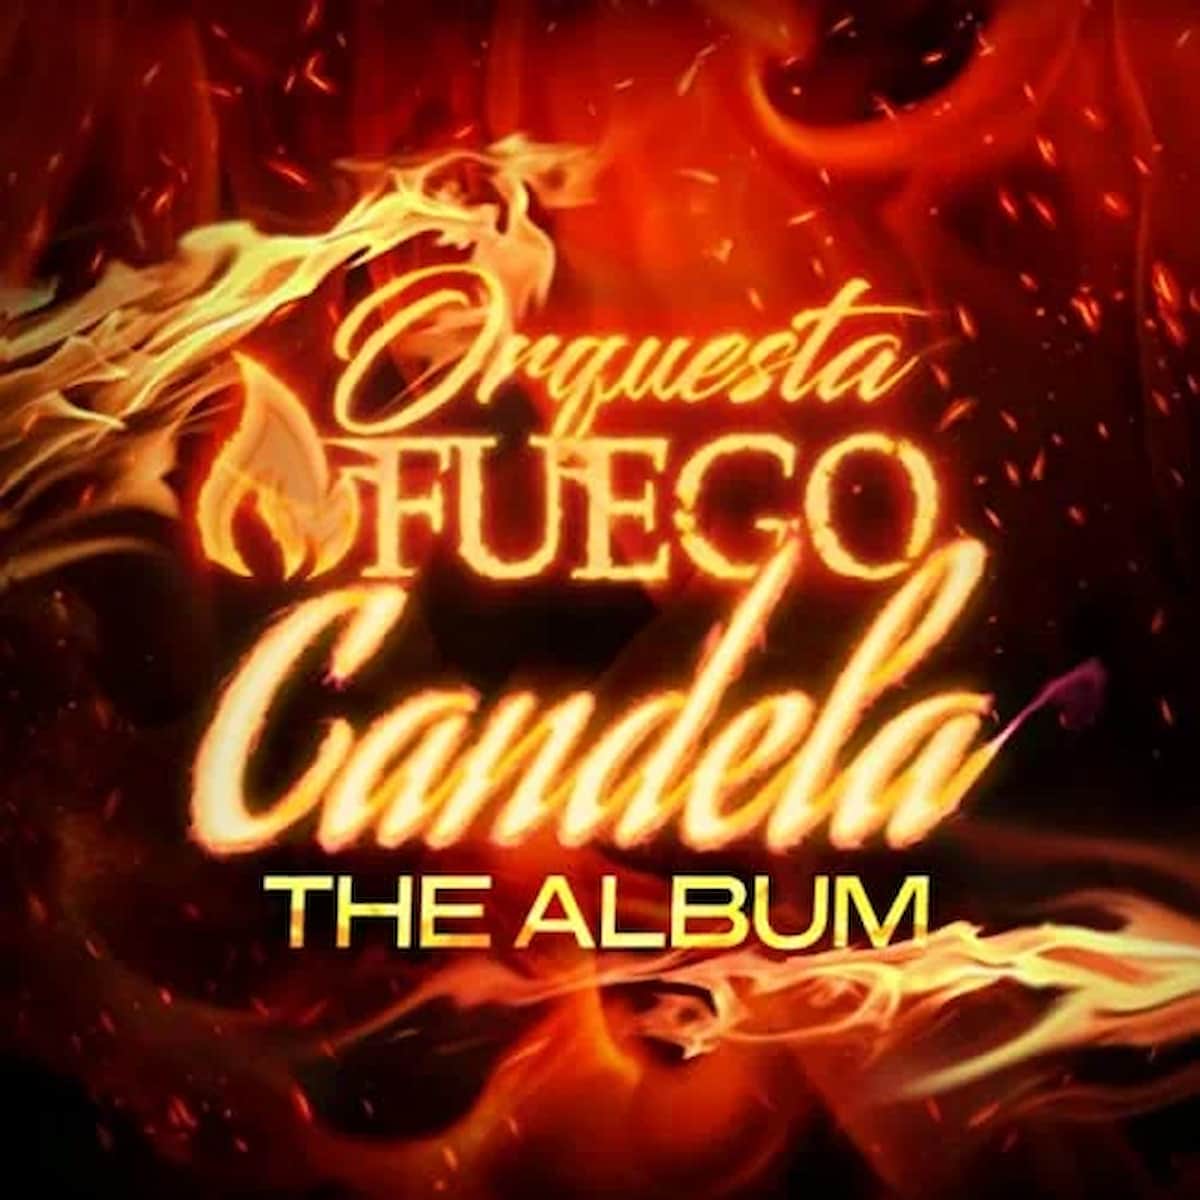 Orchestra Fuego “Candela”